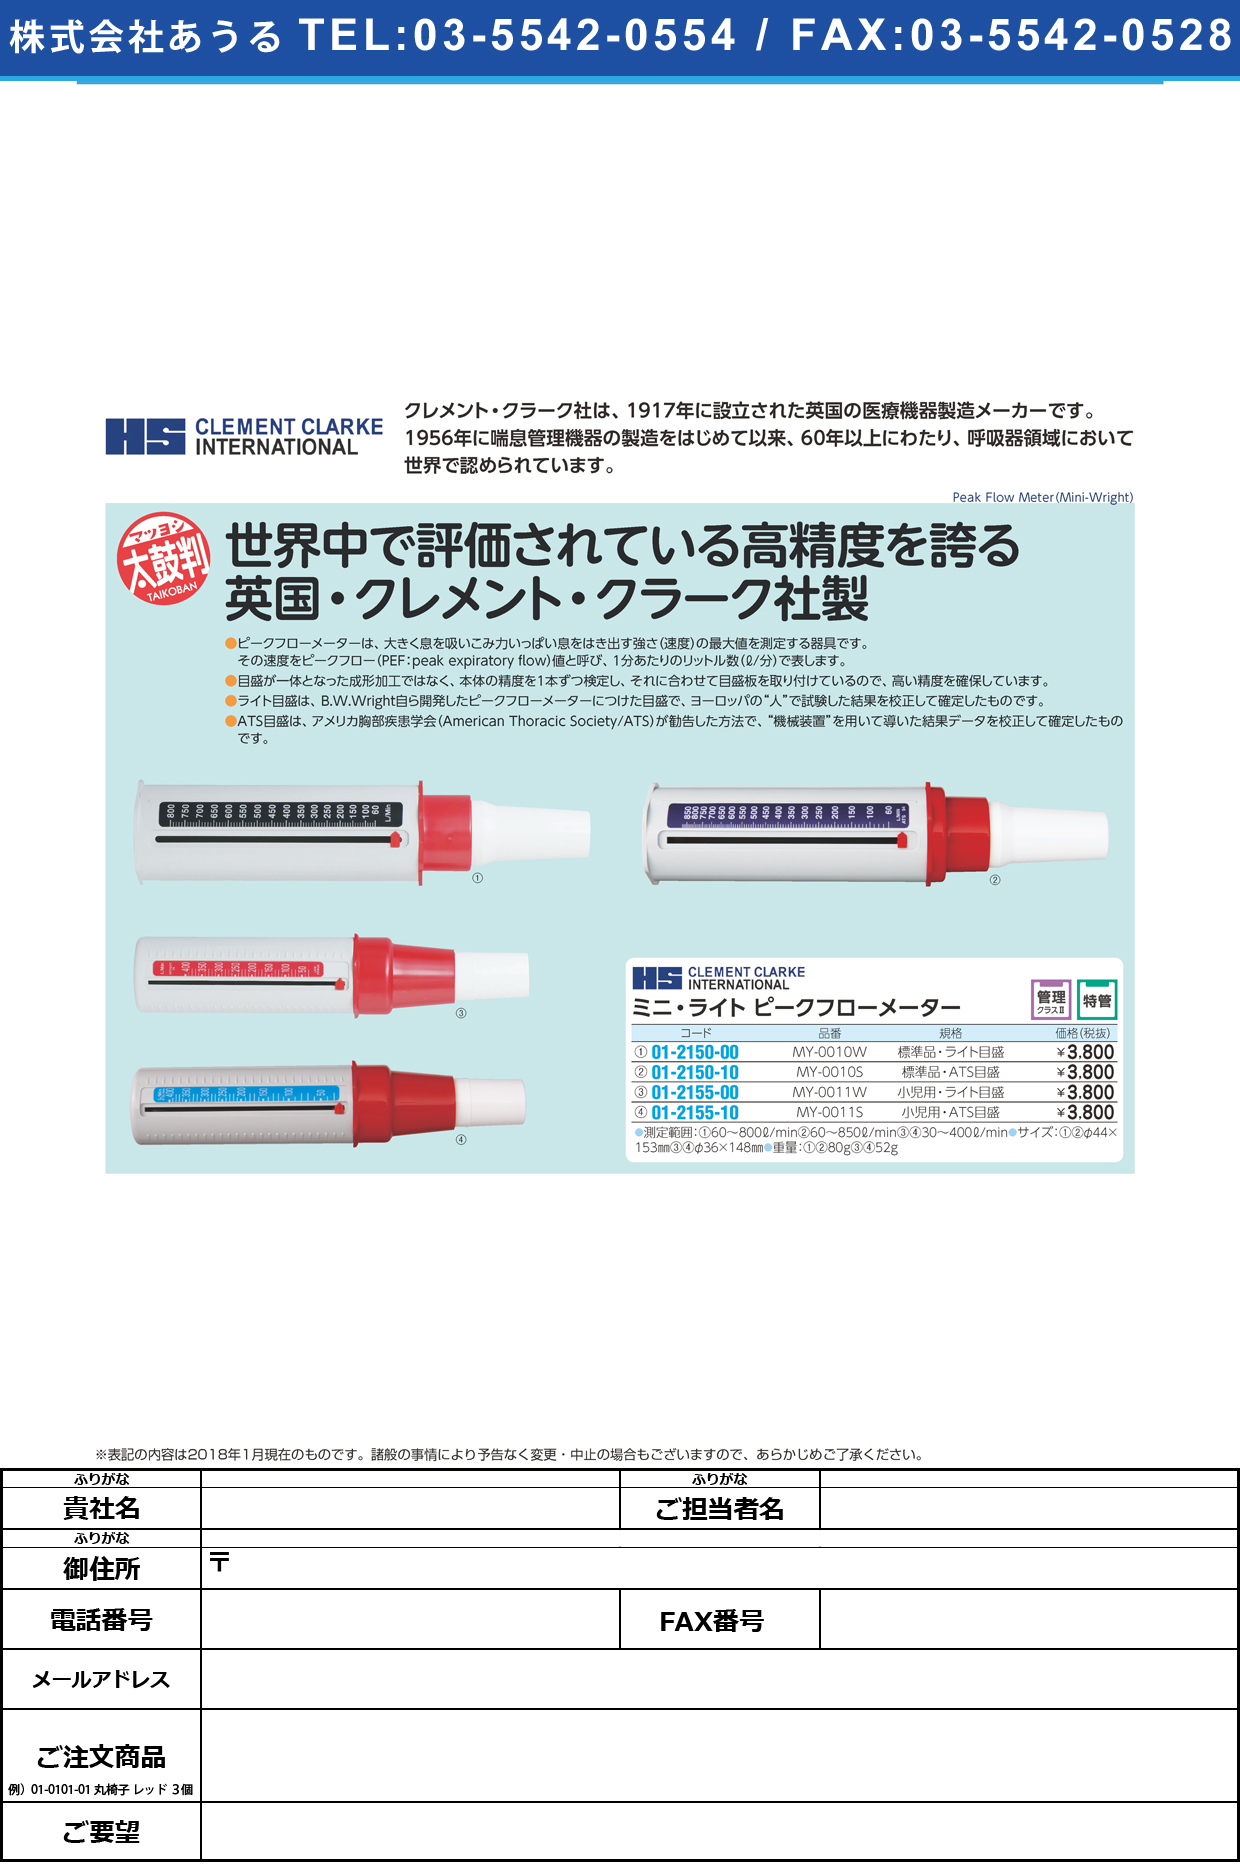 ミニライトピークフローメーター標準品 MY-0010W(ﾗｲﾄｽｹｰﾙ) ﾐﾆﾗｲﾄﾋﾟｰｸﾌﾛｰﾒｰﾀｰ(ﾋｮｳ(クレメントクラーク社)